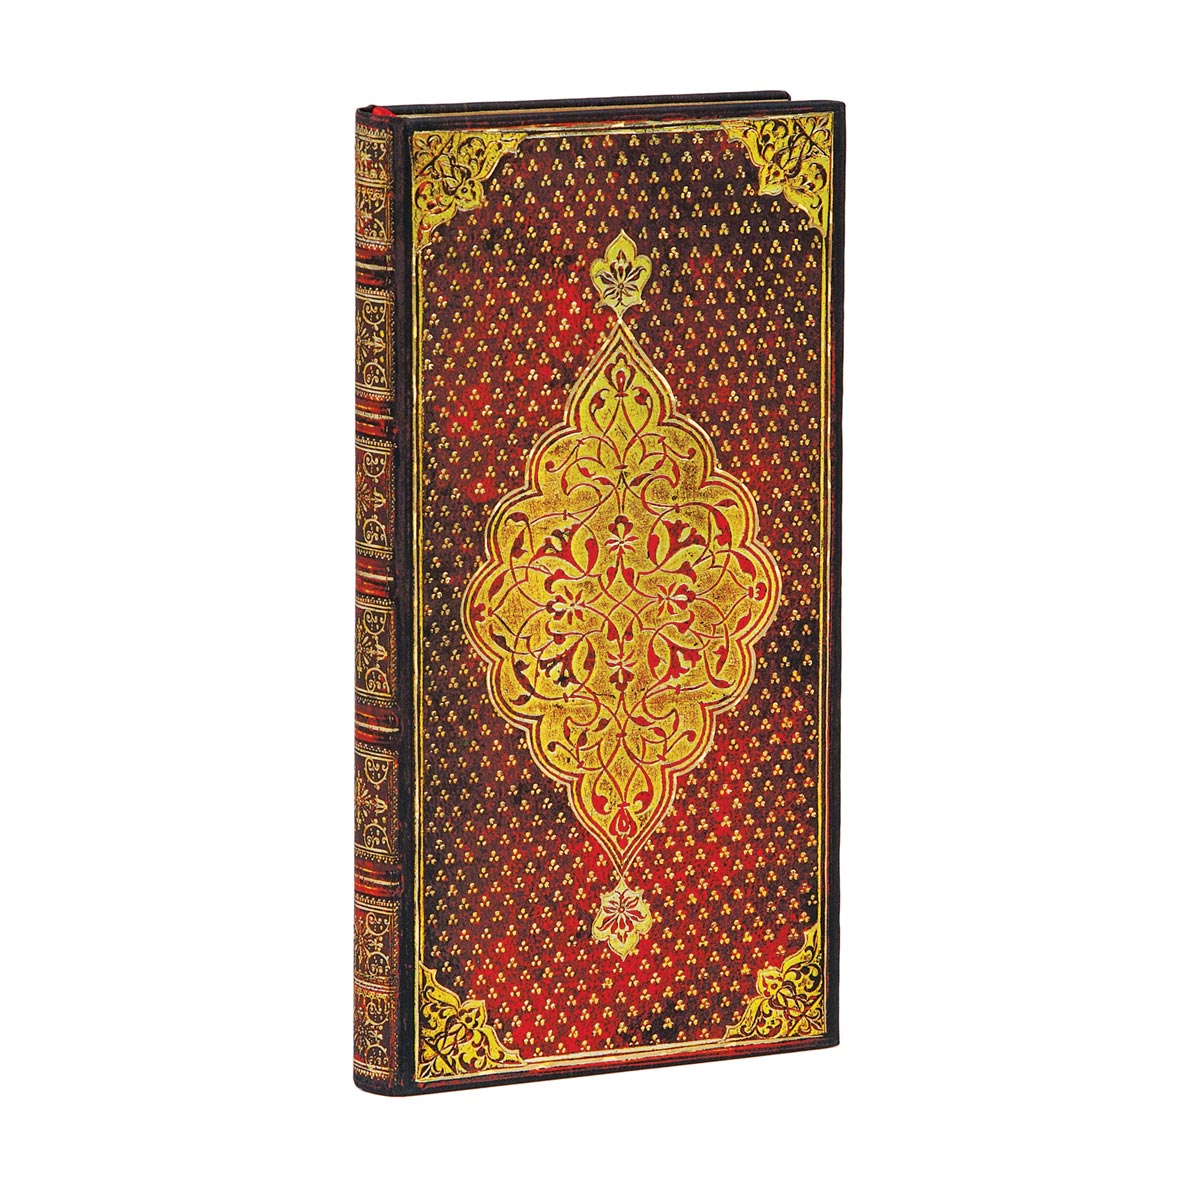 Paperblanks Golden Trefoil Slim 3.75 x 7 Inch Journal